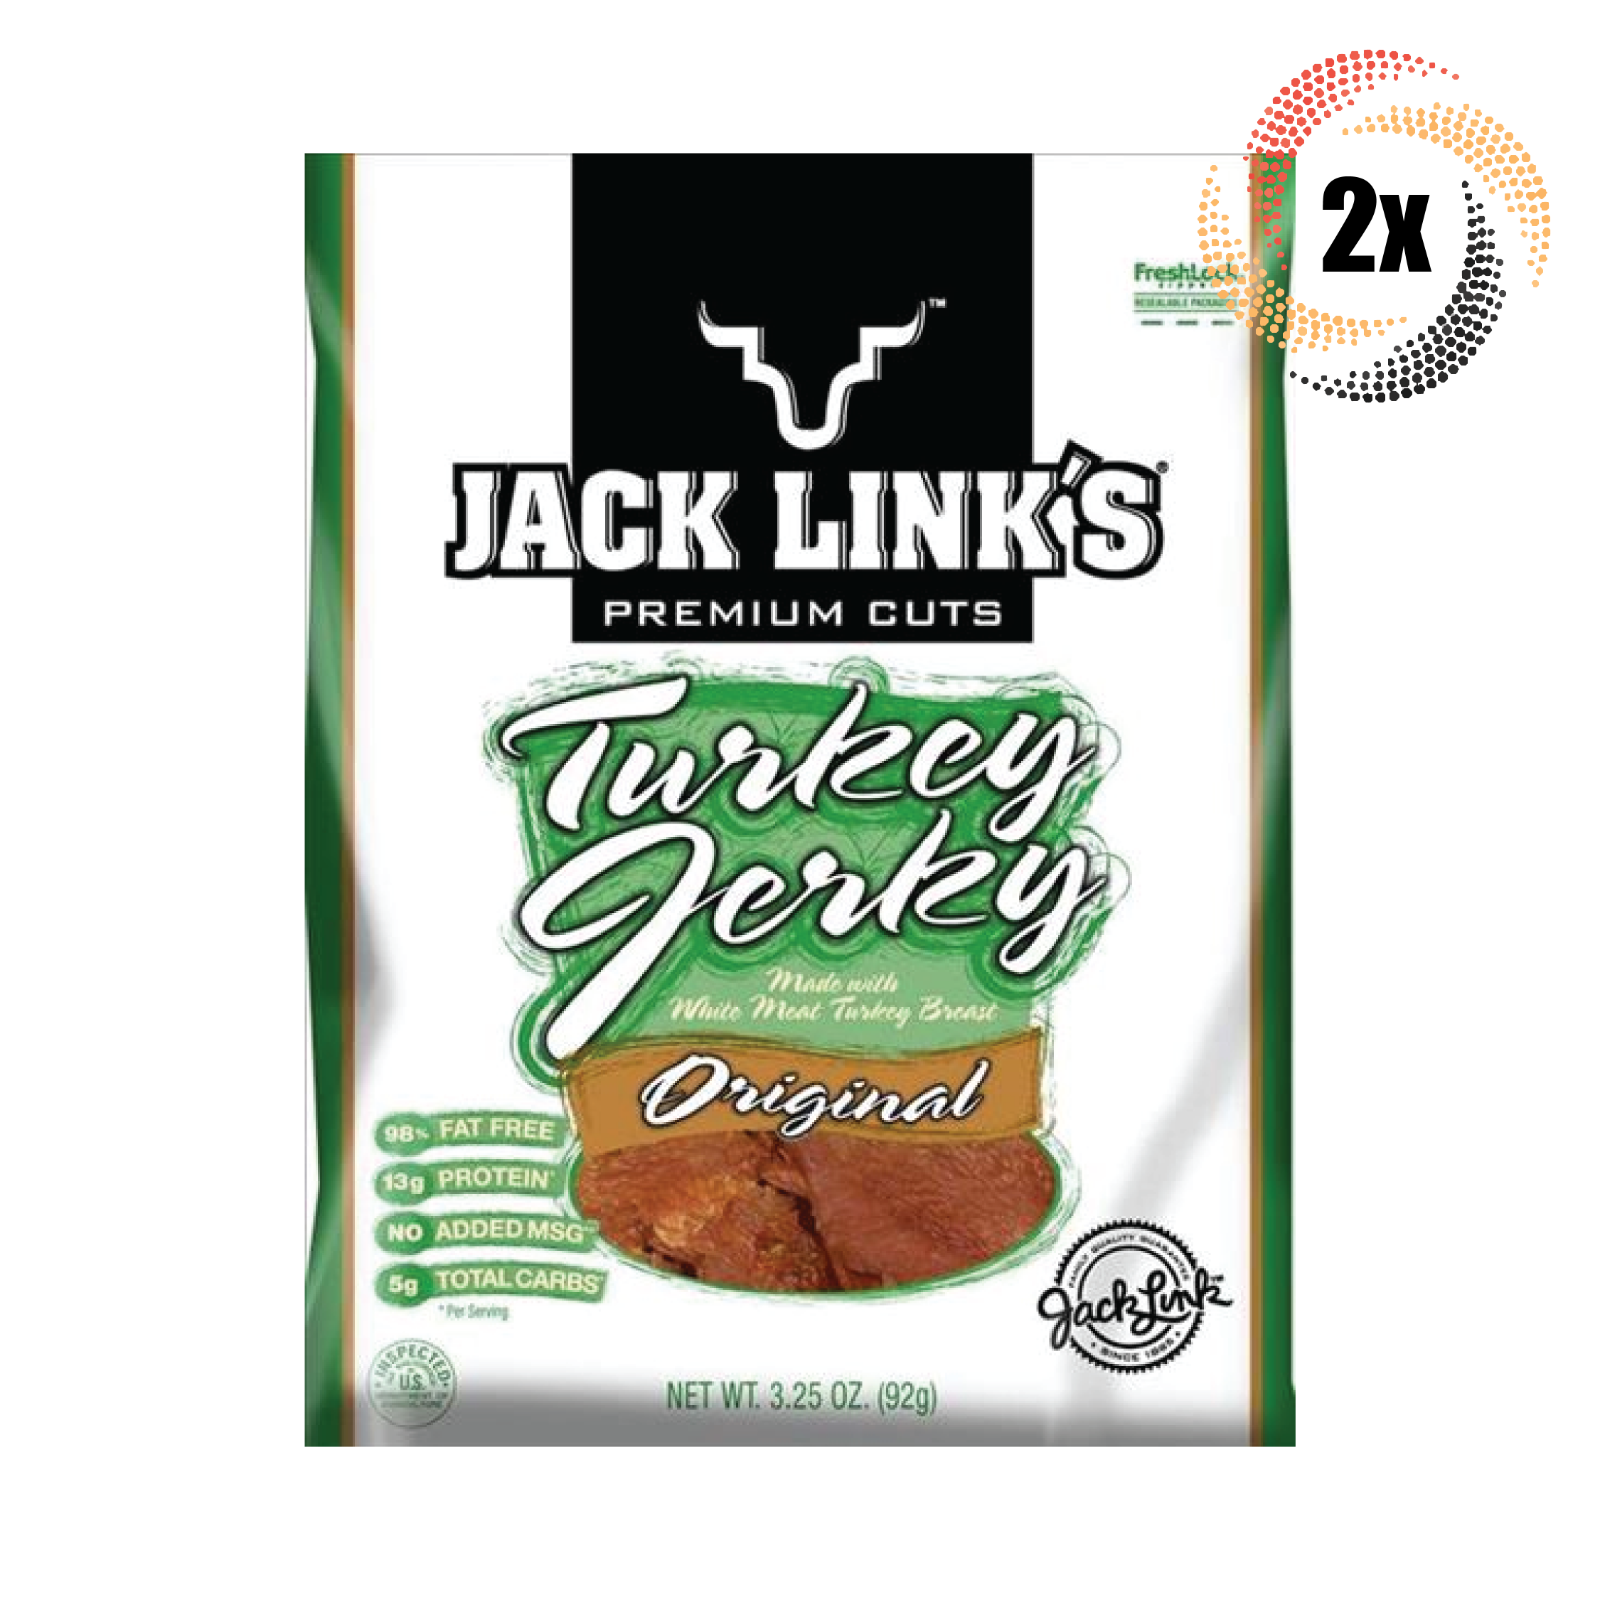 2x Packs Jack Links Premium Cuts Original Turkey Jerky 3.25oz Fast Shipping! - $21.95